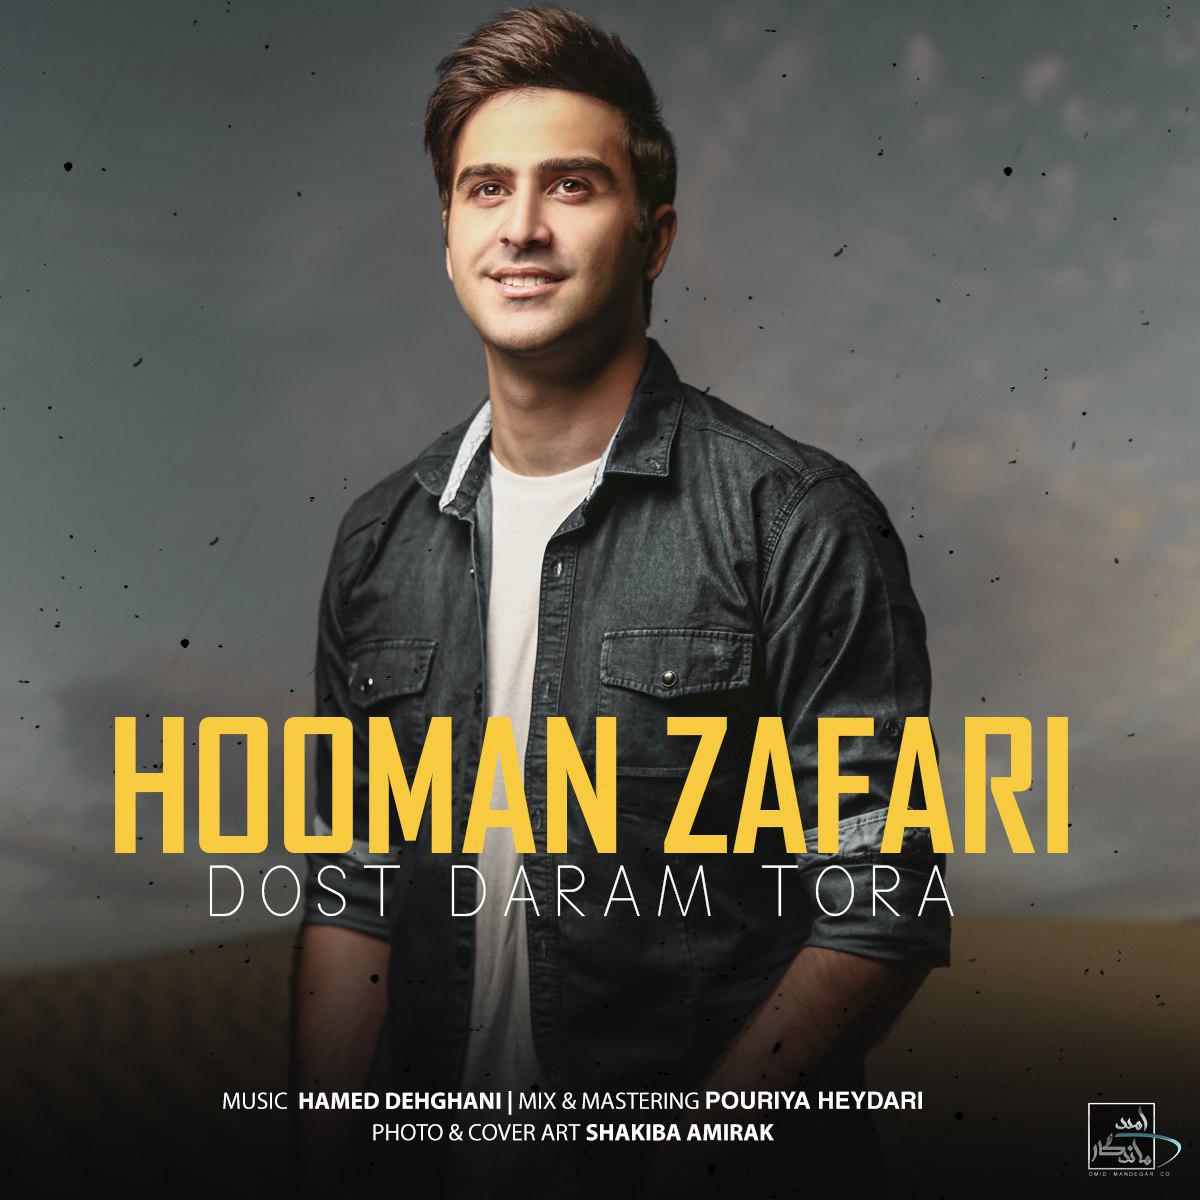  دانلود آهنگ جدید هومن ظفری - دوست دارم تورا | Download New Music By Hooman Zafari - Doost Daram Tora